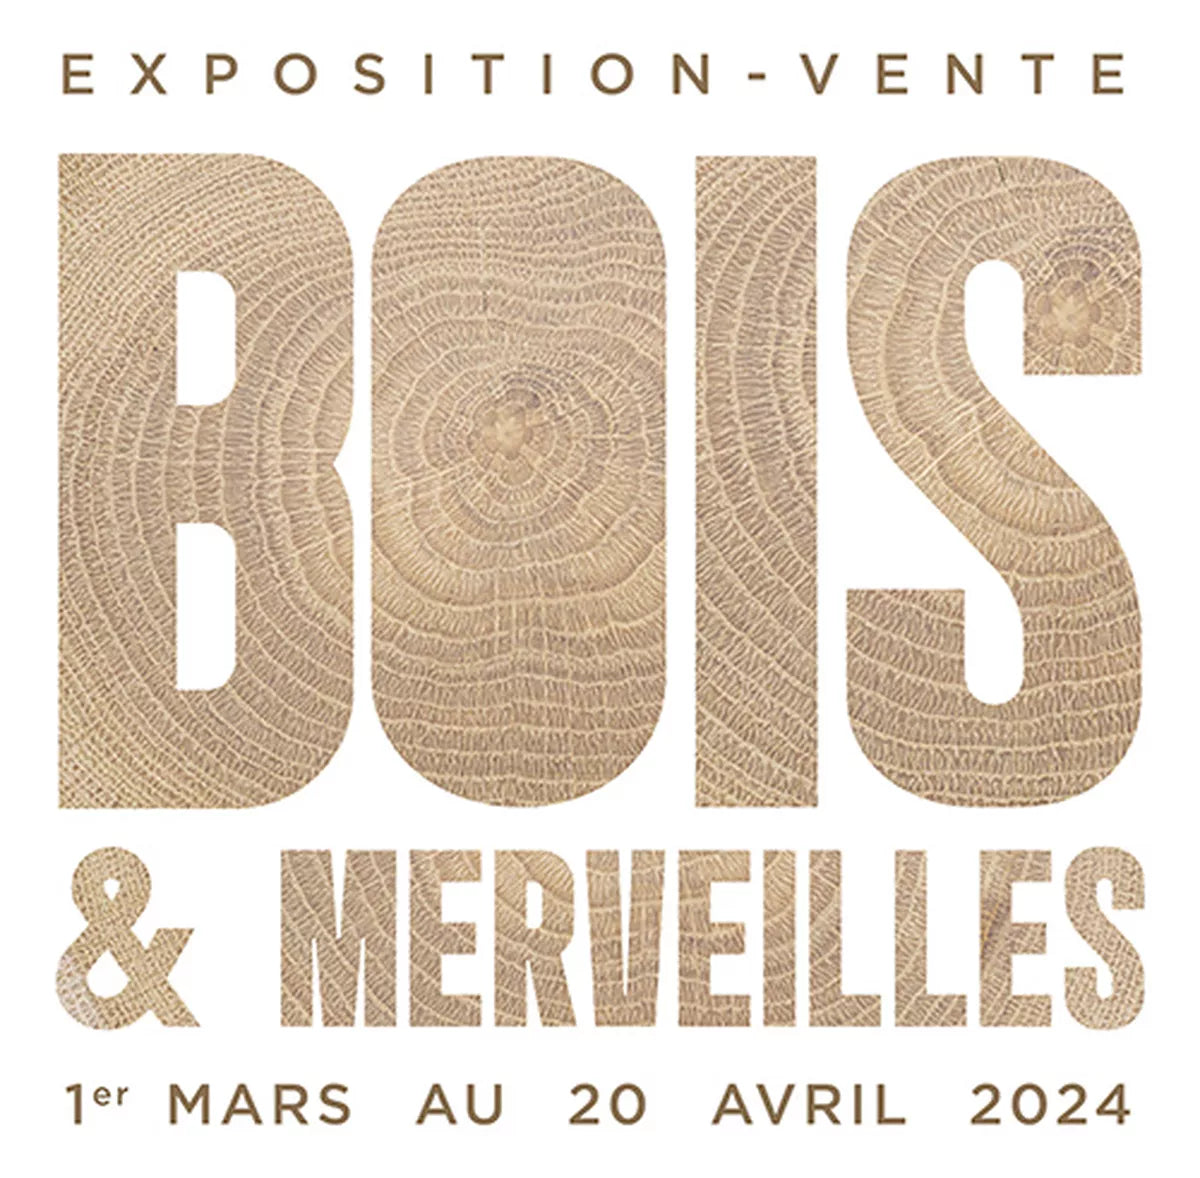 BOIS & MERVEILLES, NOUVELLE EXPOSITION-VENTE AU CONCEPT STORE | EMPREINTES Paris